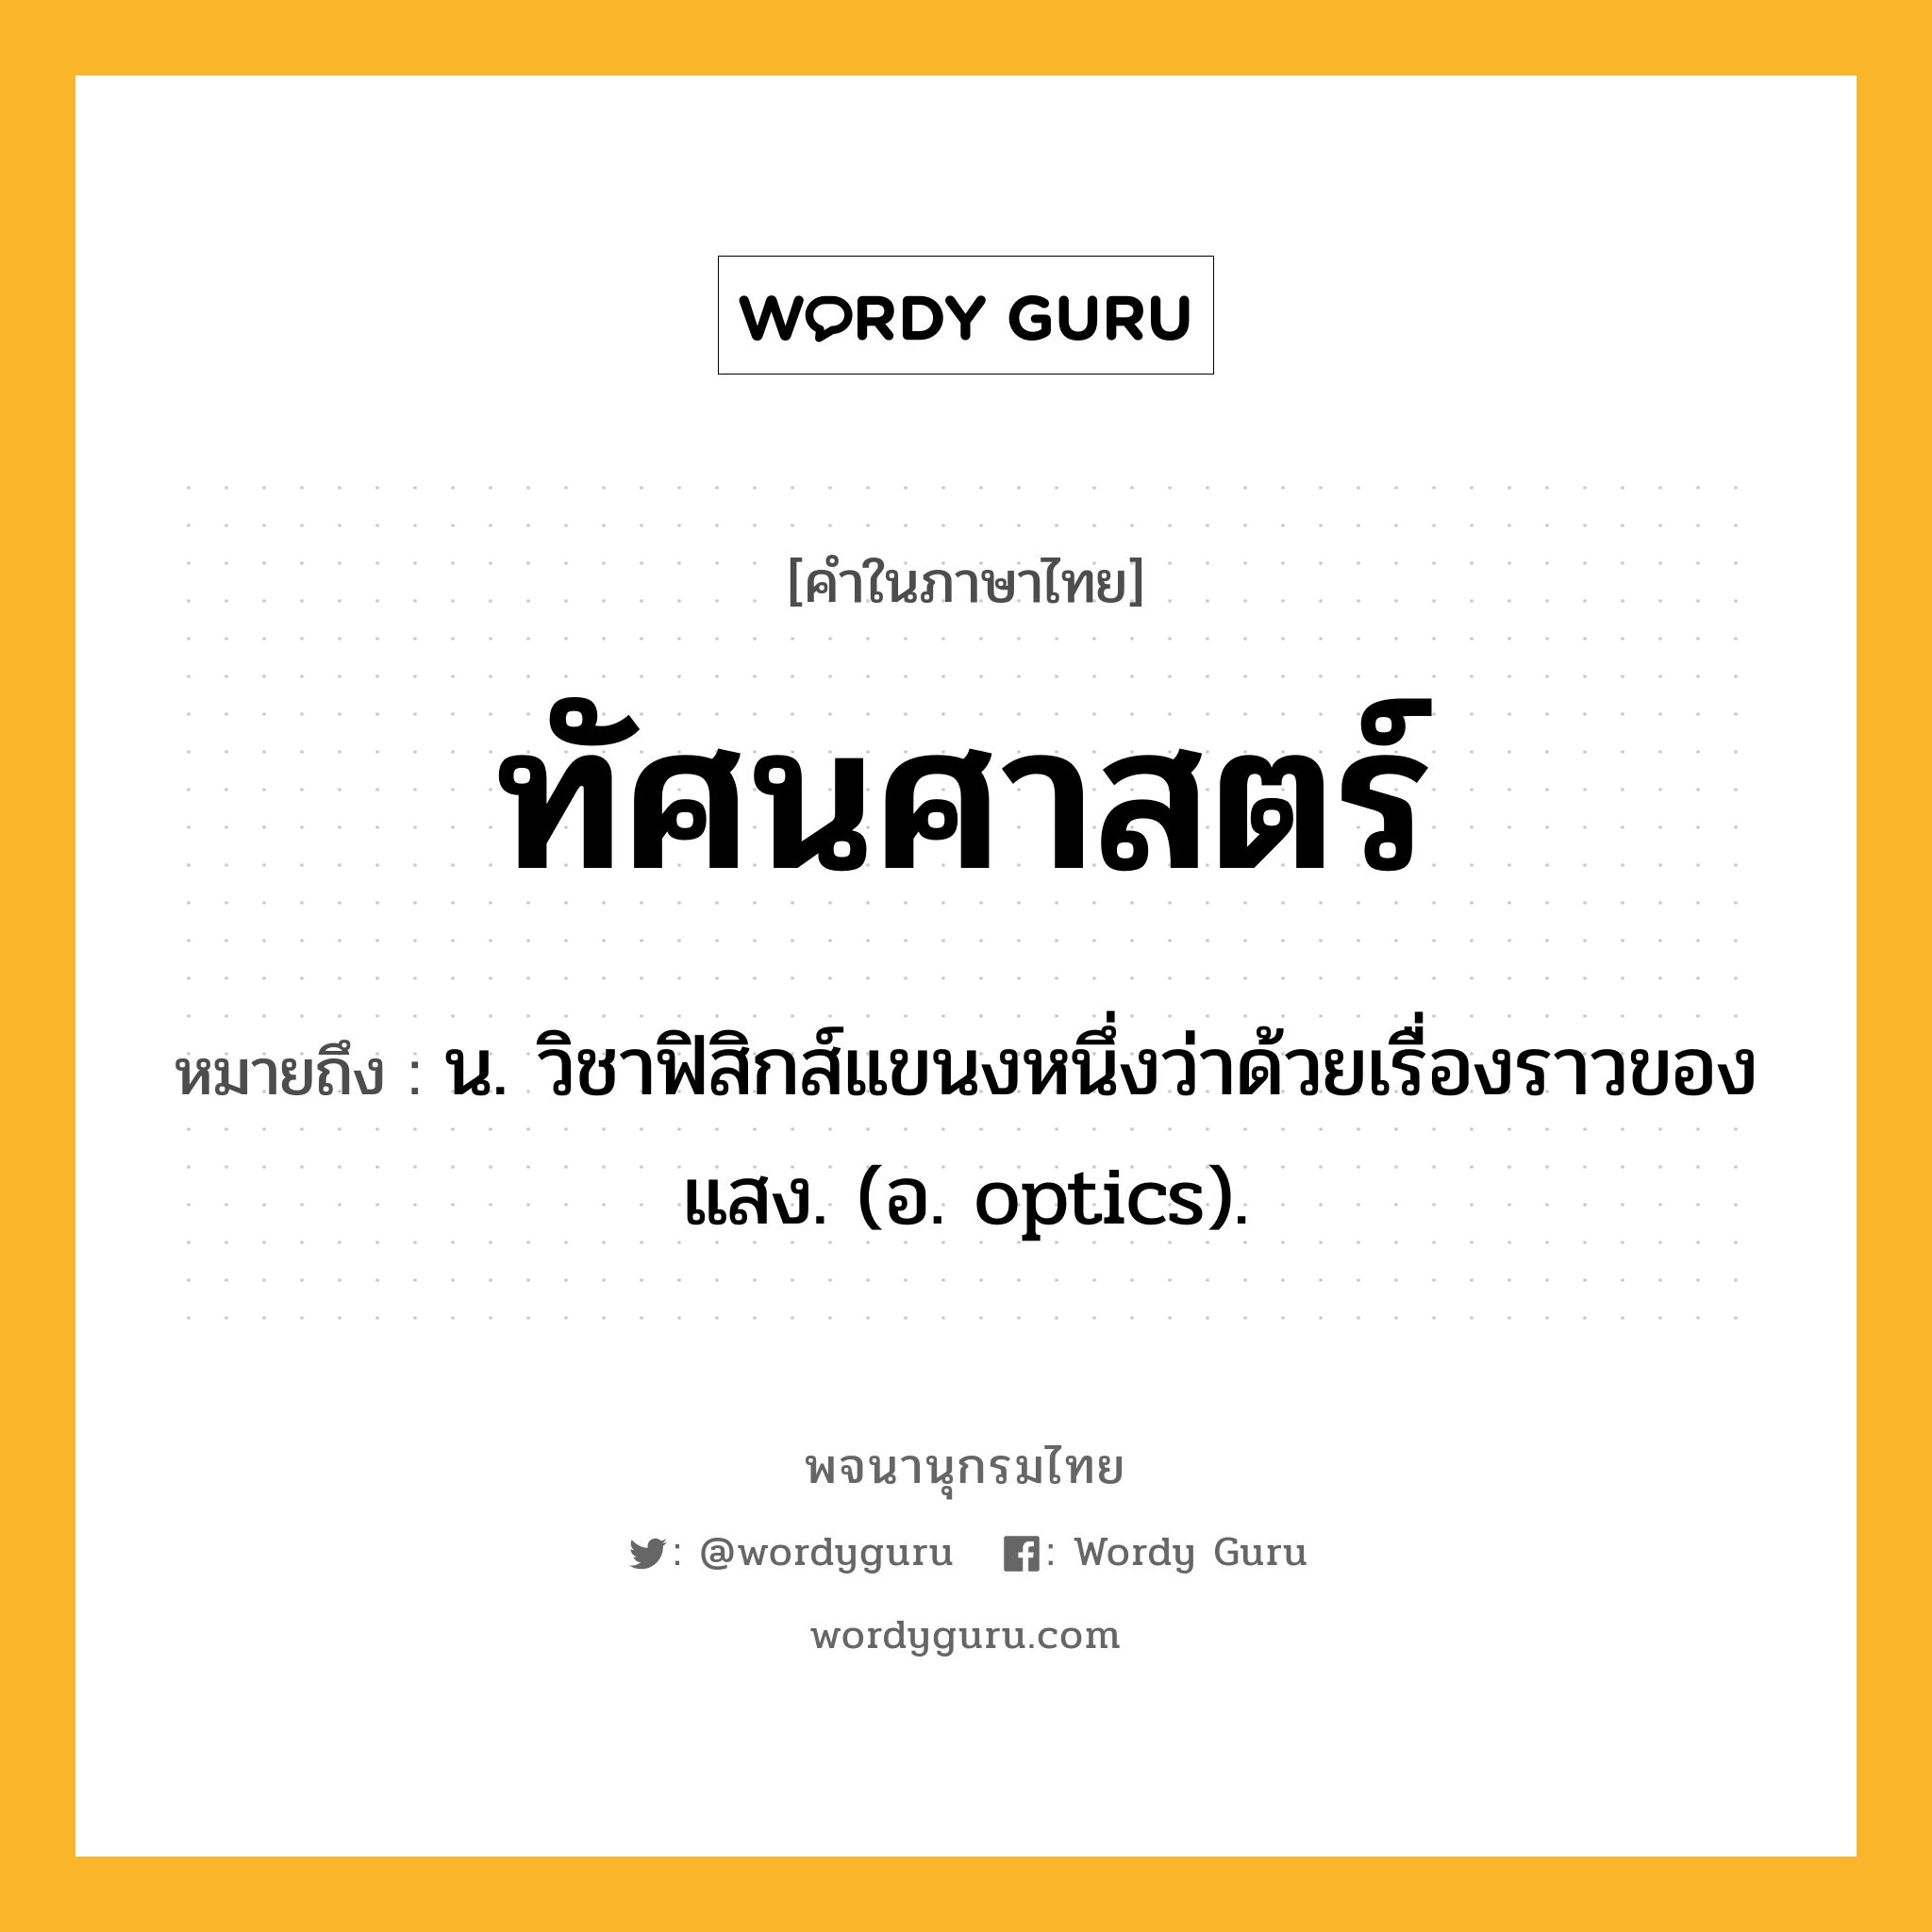 ทัศนศาสตร์ ความหมาย หมายถึงอะไร?, คำในภาษาไทย ทัศนศาสตร์ หมายถึง น. วิชาฟิสิกส์แขนงหนึ่งว่าด้วยเรื่องราวของแสง. (อ. optics).